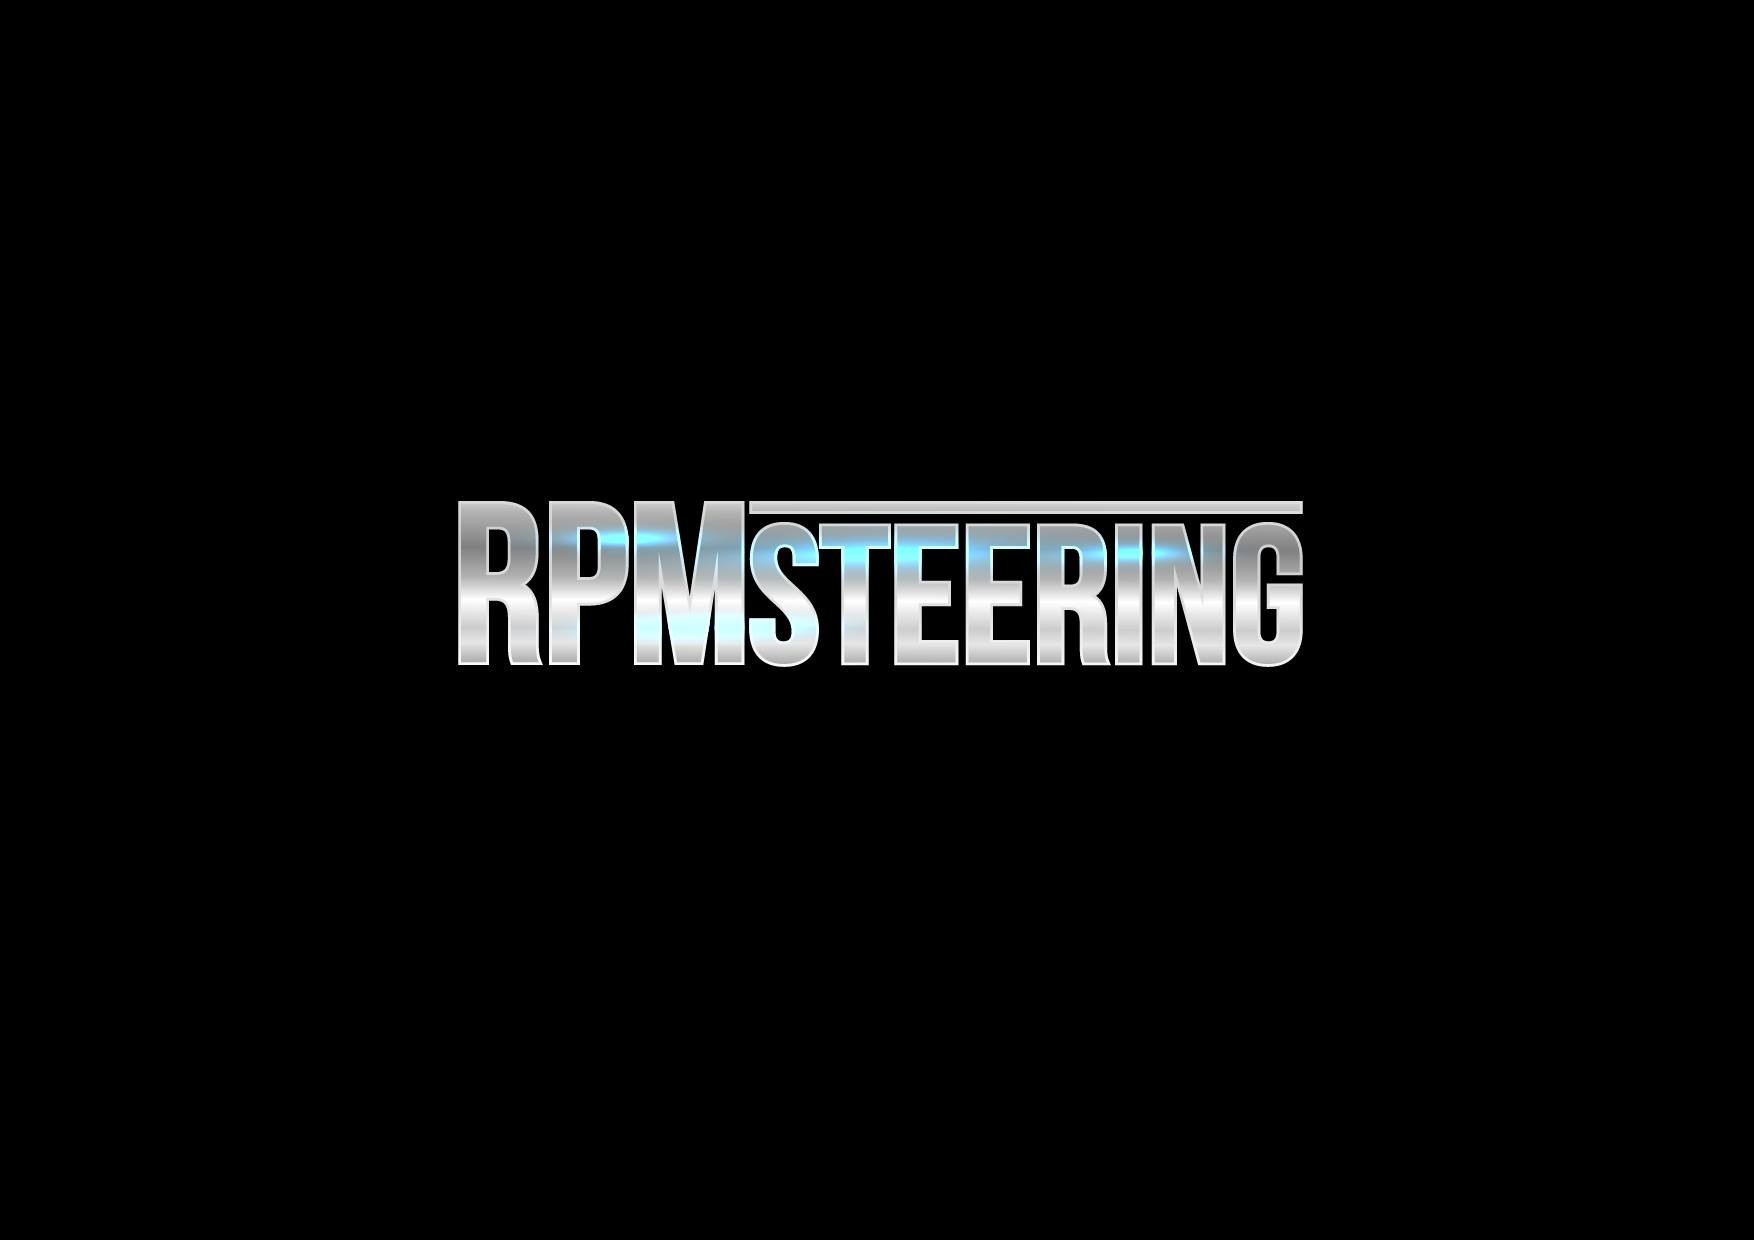 Rpm-steering